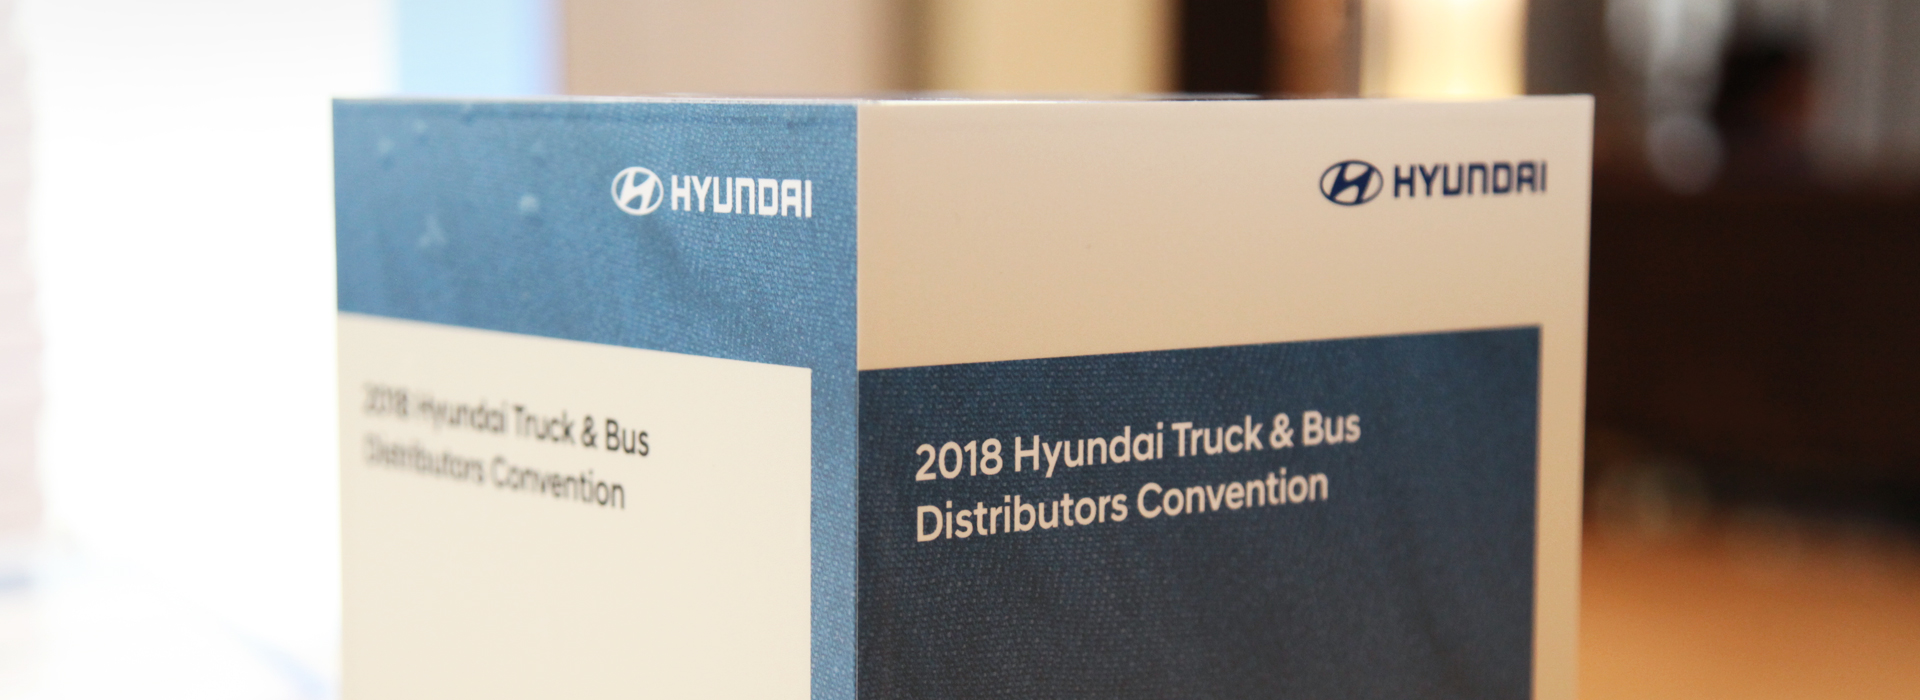 اتفاقية موزعي العلامة التجارية Hyundai Truck & Bus  2018 Slider Image4